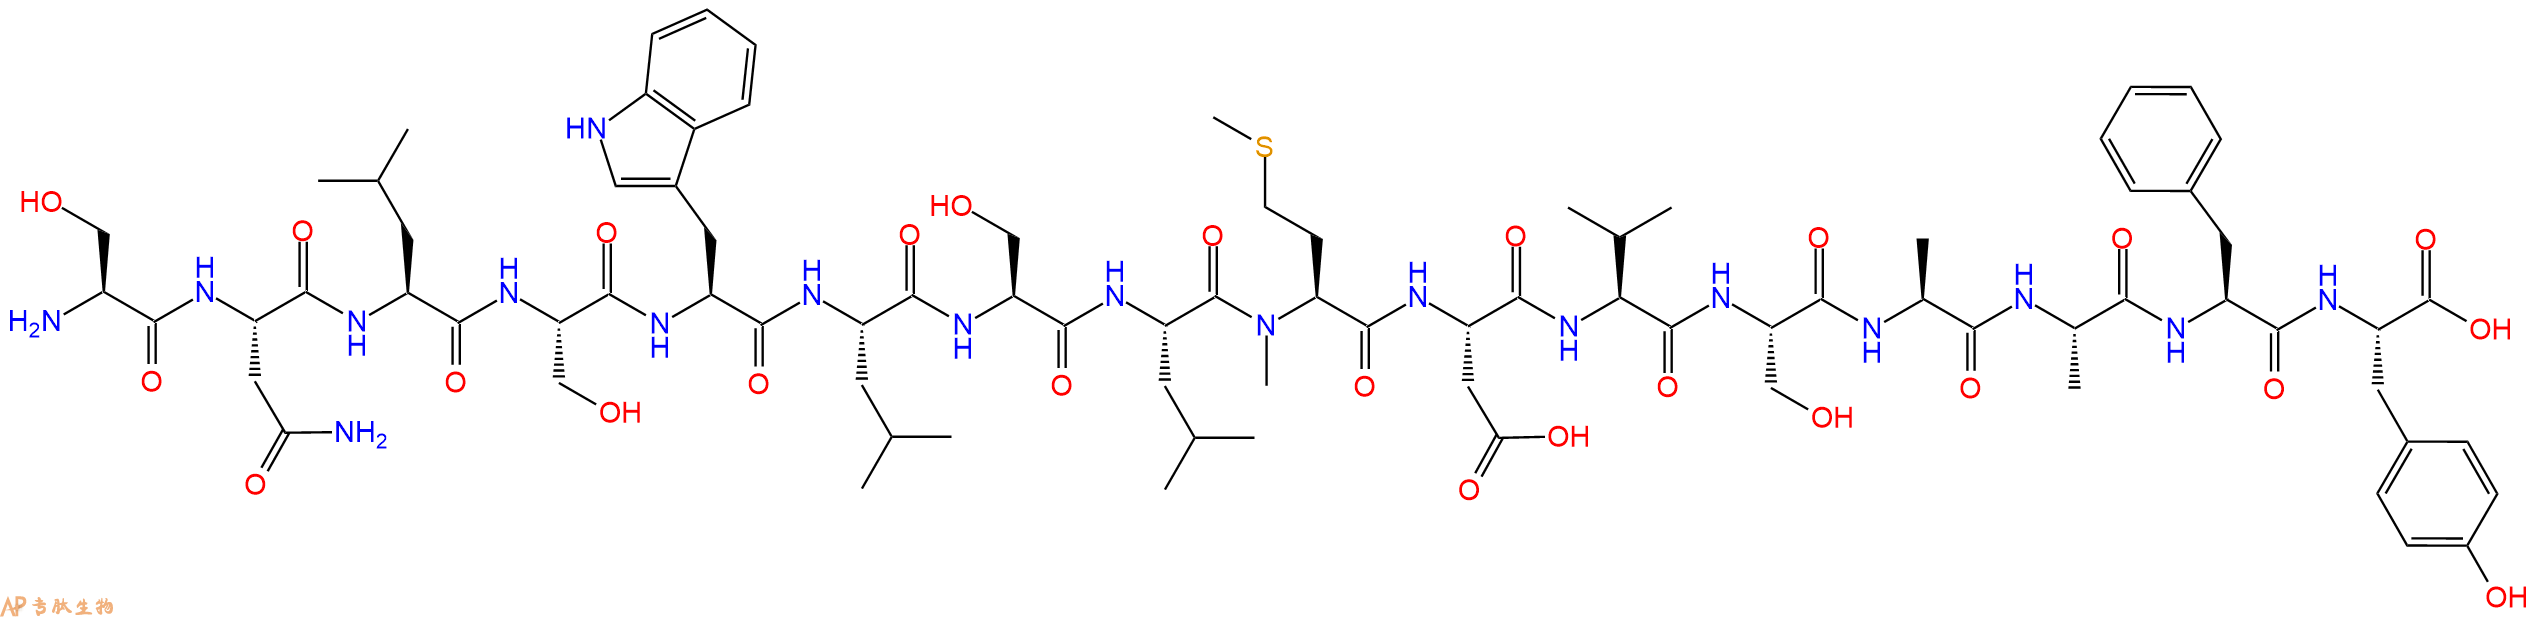 专肽生物产品H2N-Ser-Asn-Leu-Ser-Trp-Leu-Ser-Leu-(NMe)Met-Asp-V